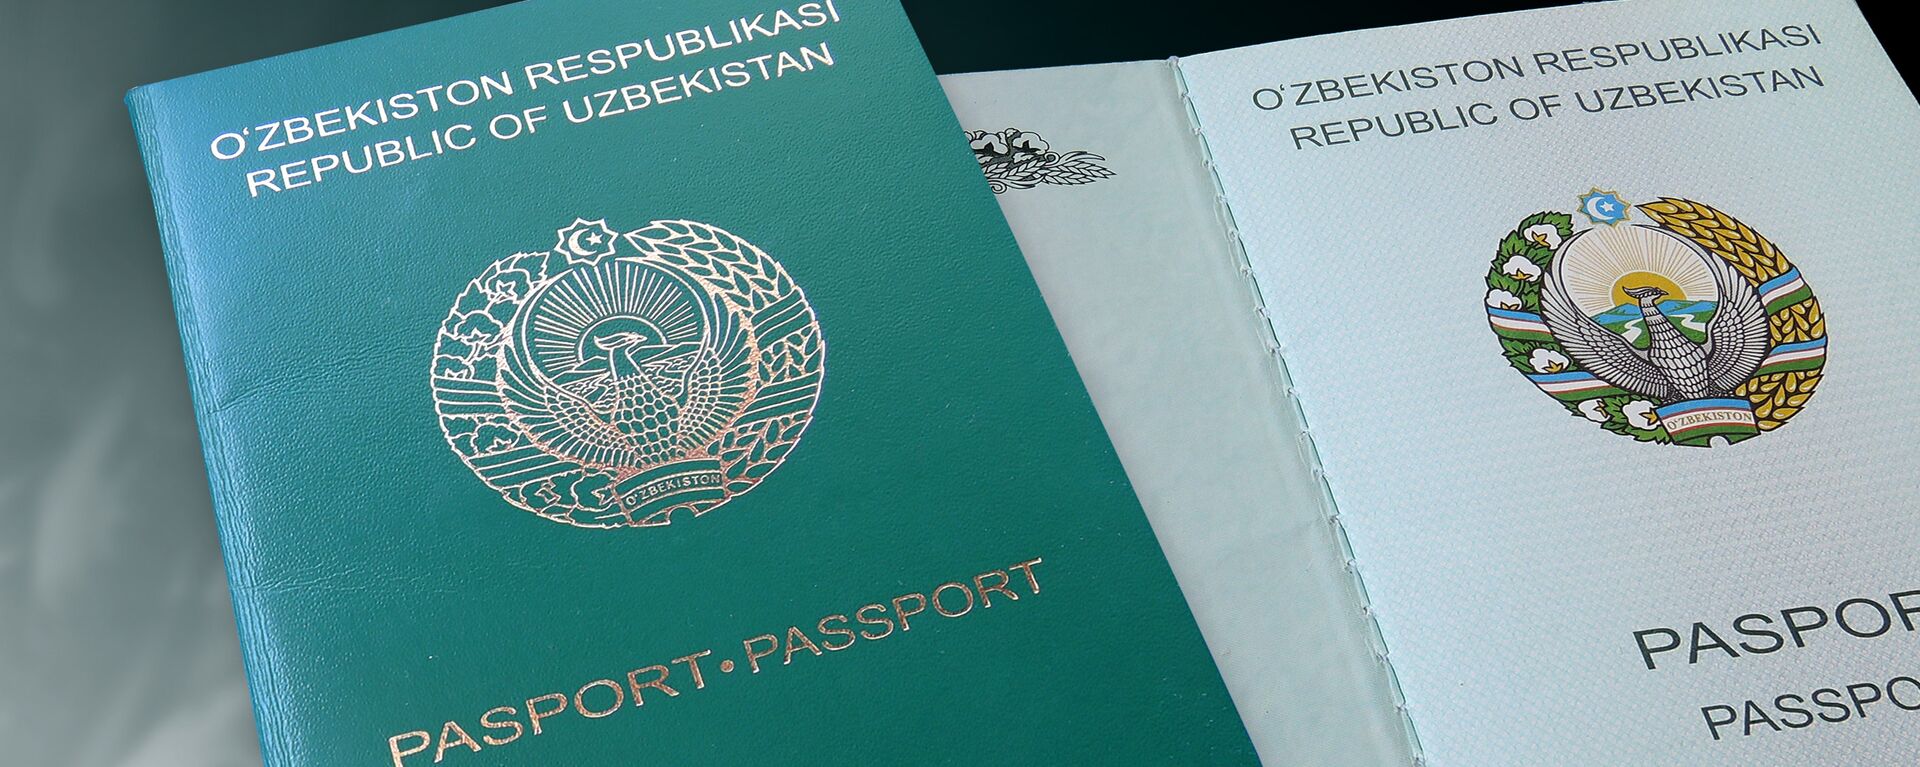 Паспорт гражданина Узбекистана - Sputnik Ўзбекистон, 1920, 02.02.2021